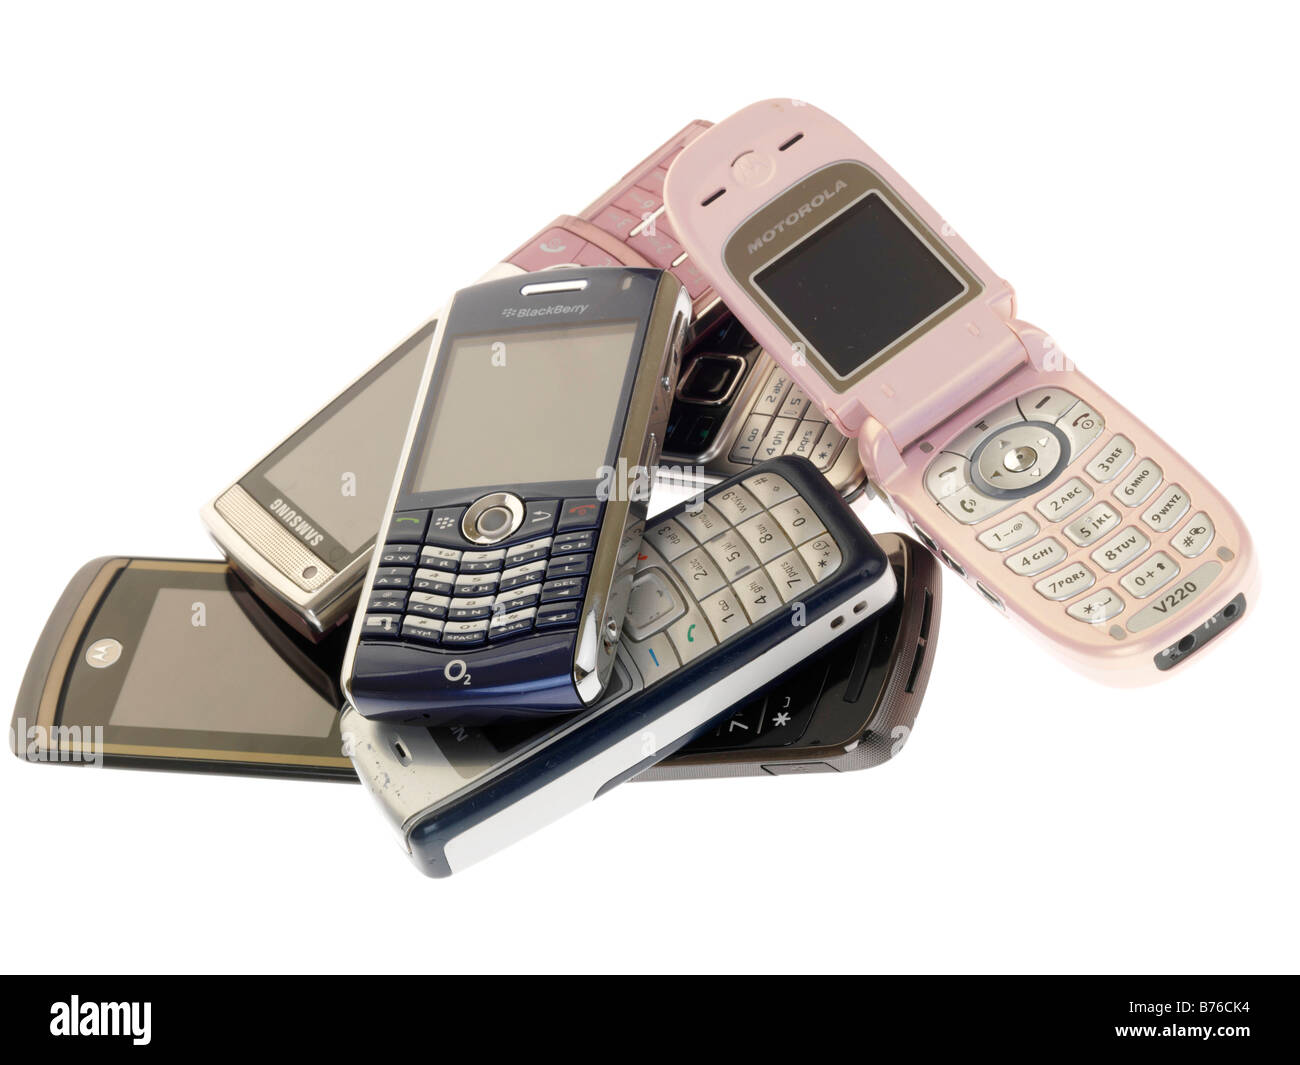 Sammlung oder Stapel der alten Gestern Technologie Mobile Handys aus Datum nicht mehr verwendet oder als Kommunikationstechnologie Fortschritte wollte Stockfoto